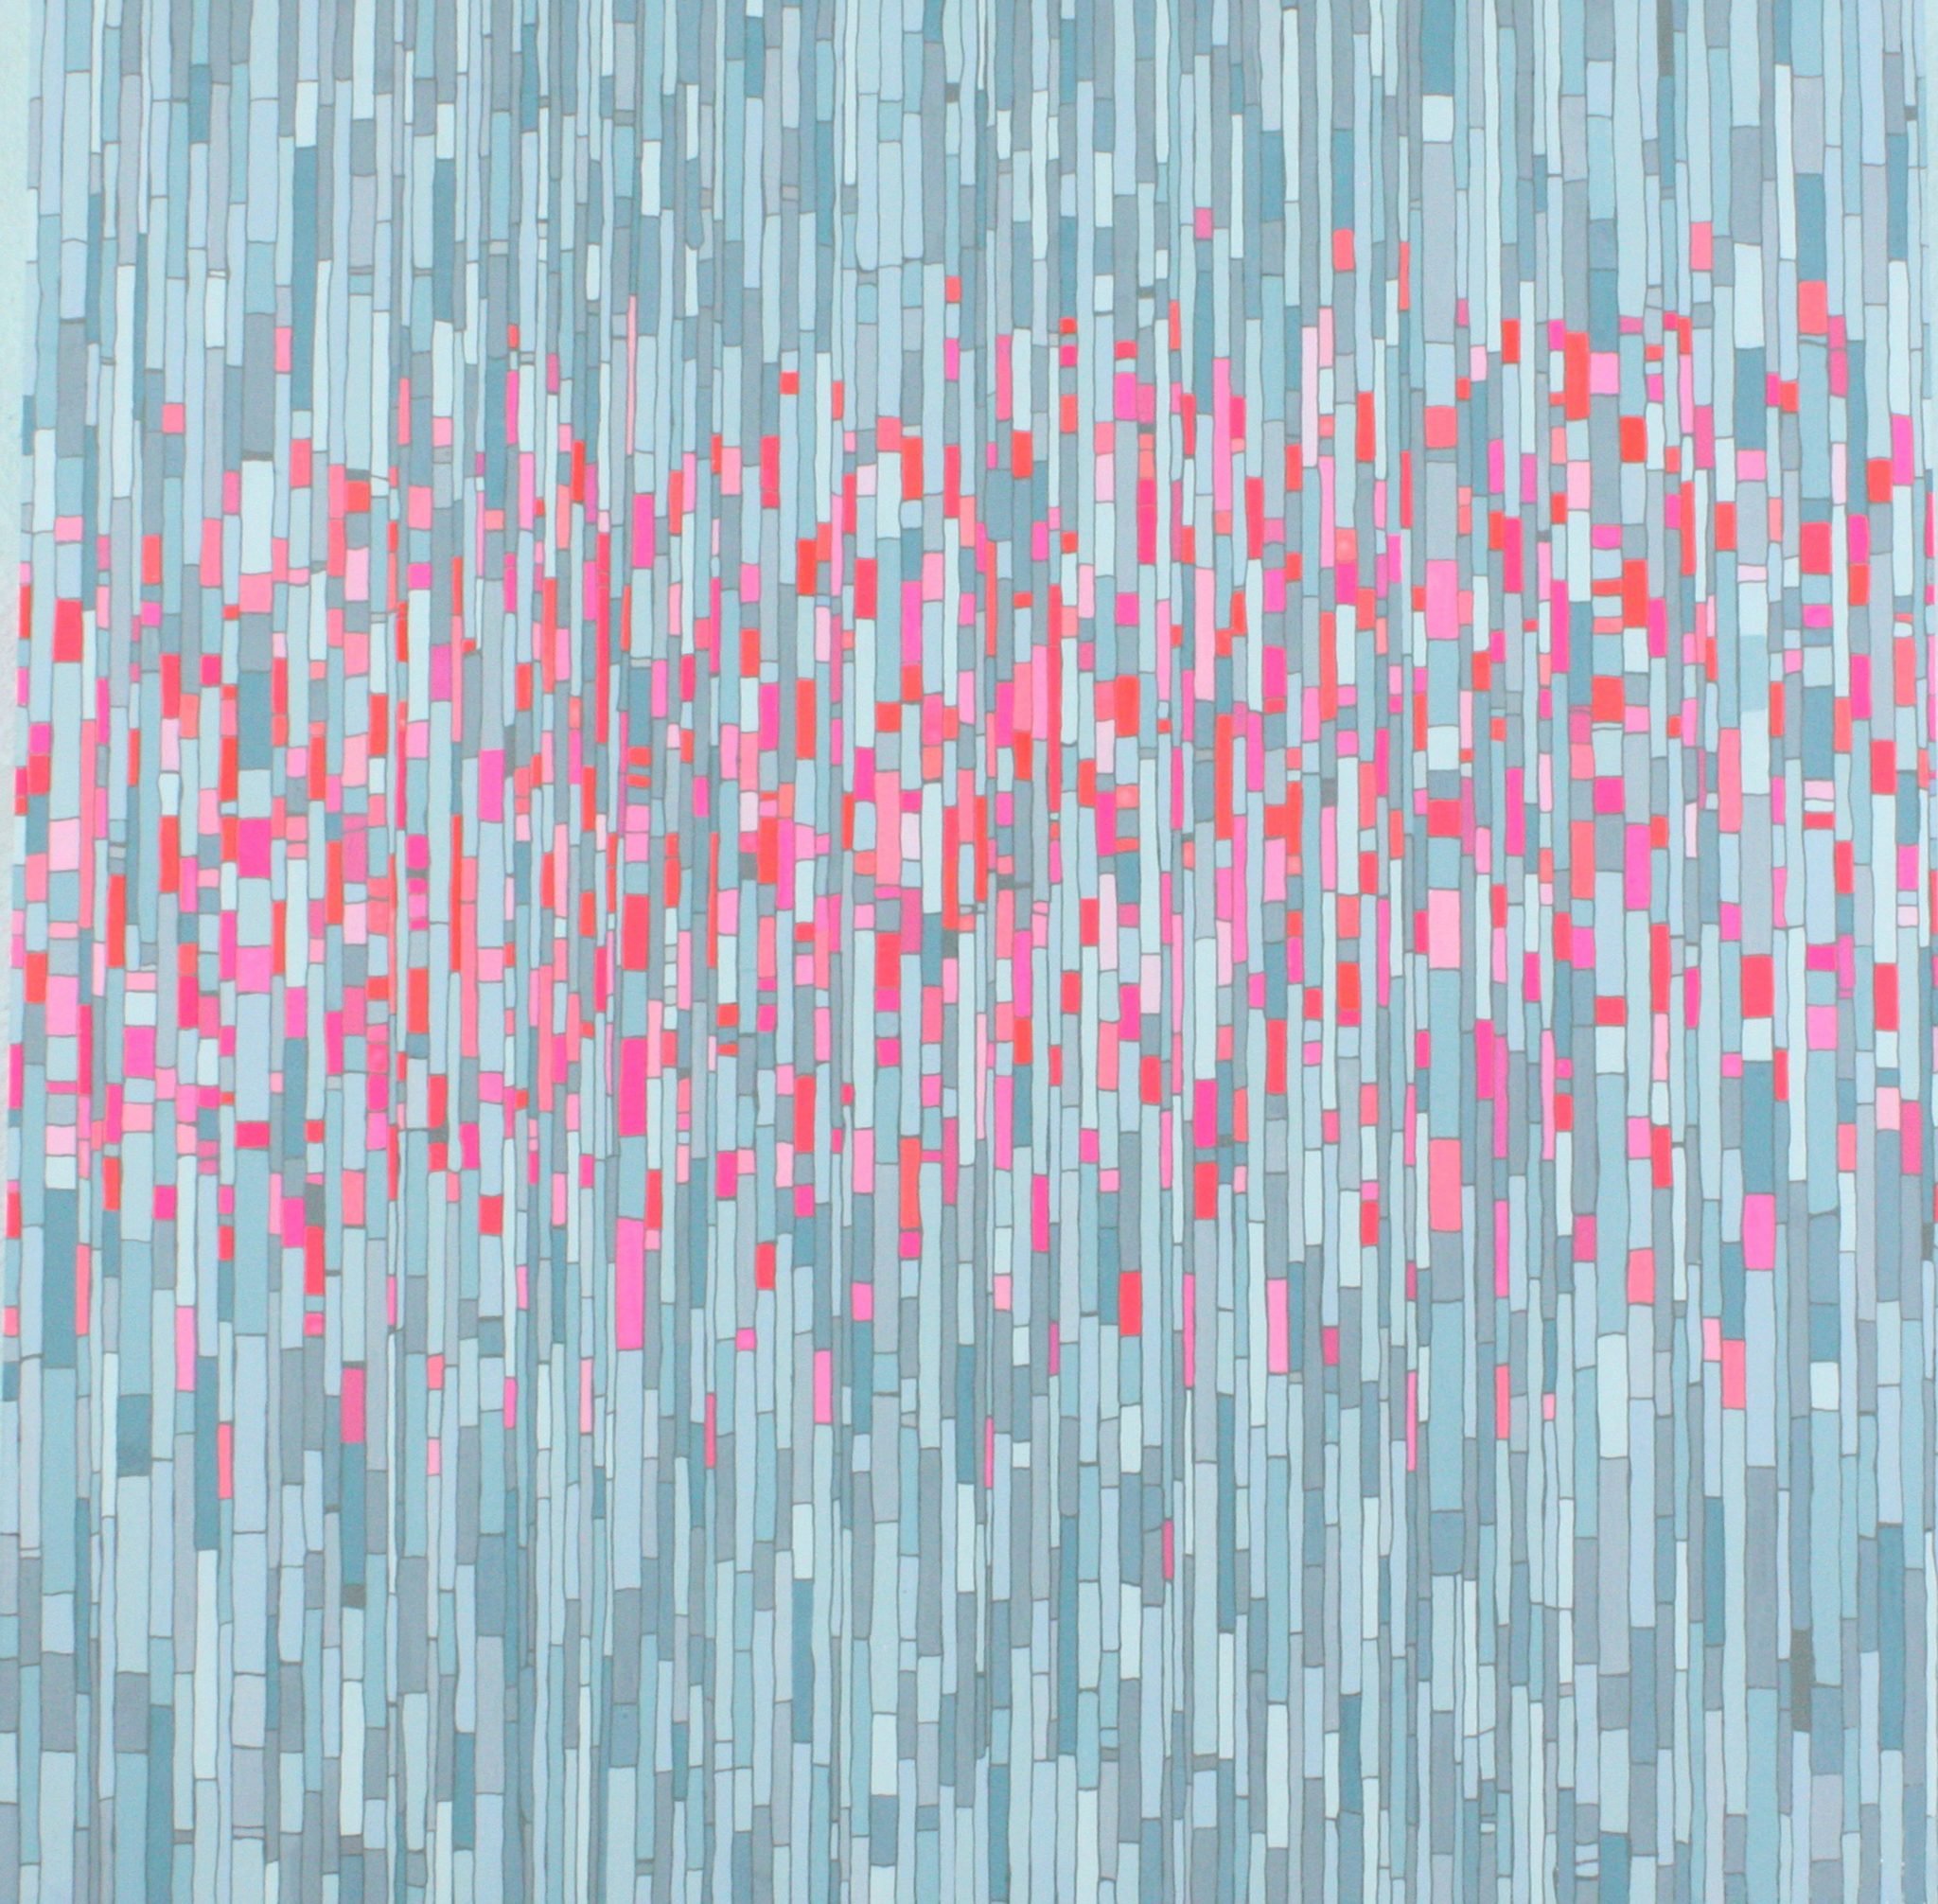 Katy David, "Glitch II"; Gouache and acrylic on panel; 24" x 24" x 2"